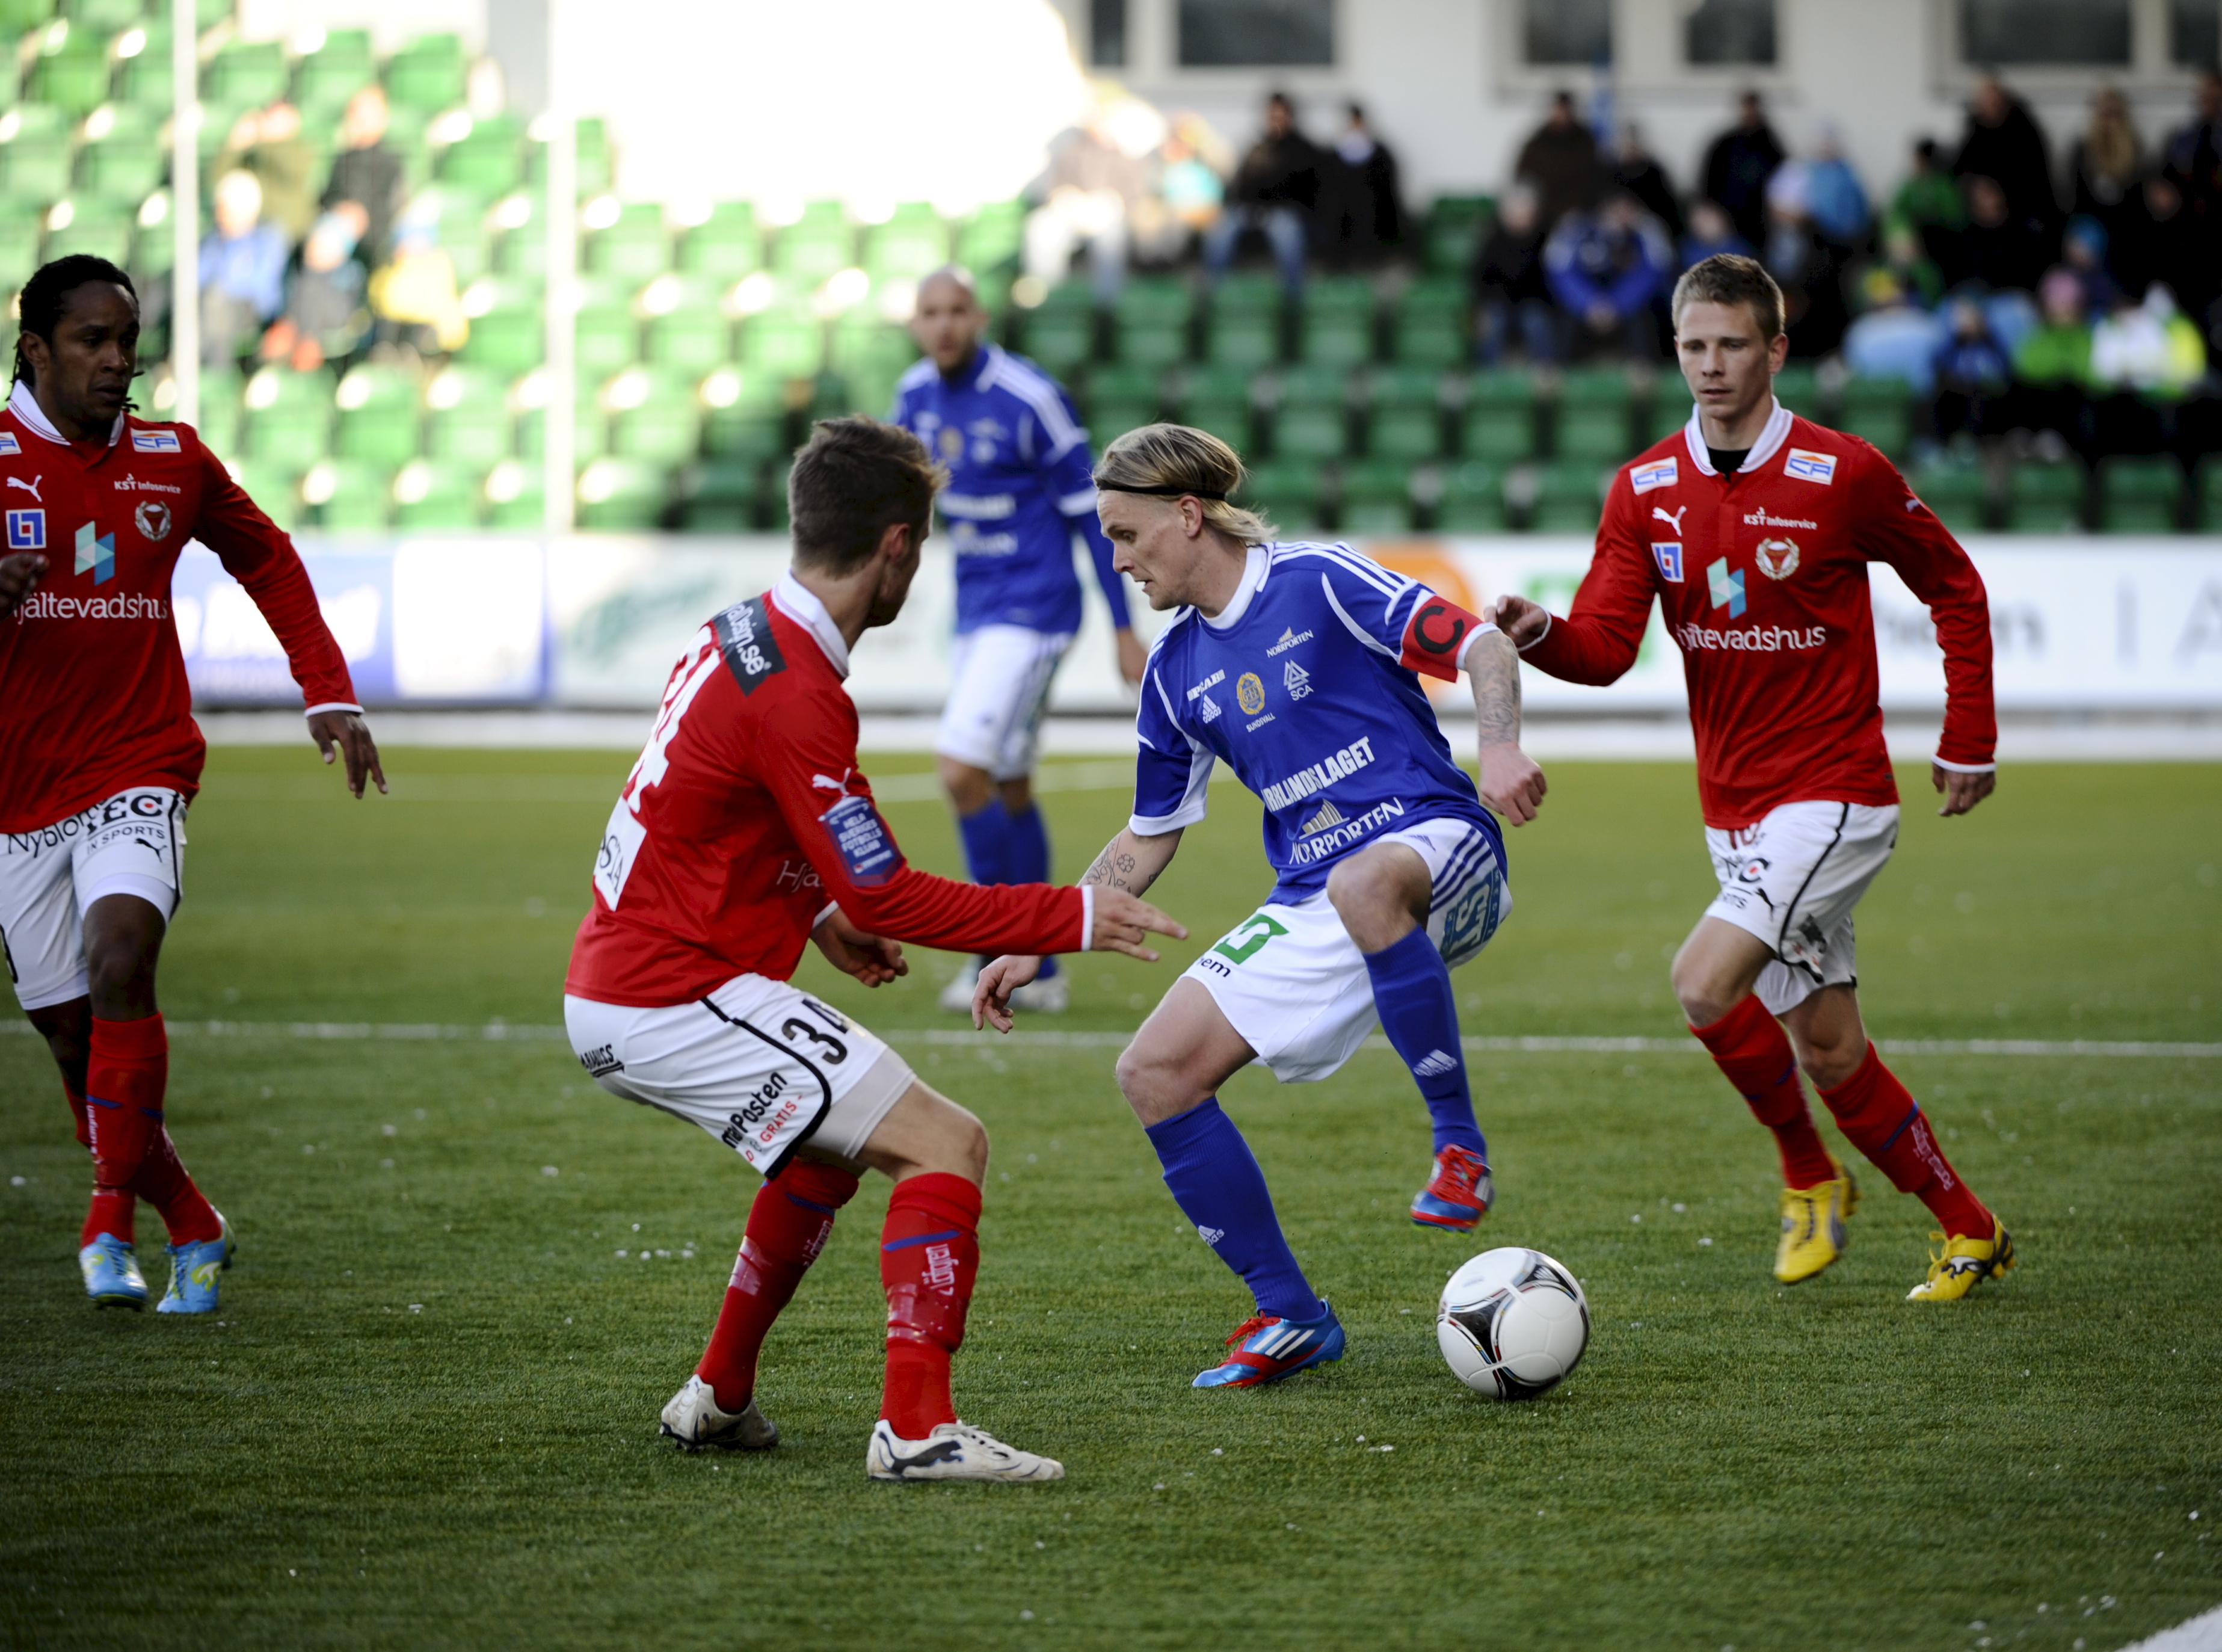 Skulason utmanas av flera Kalmarspelare.